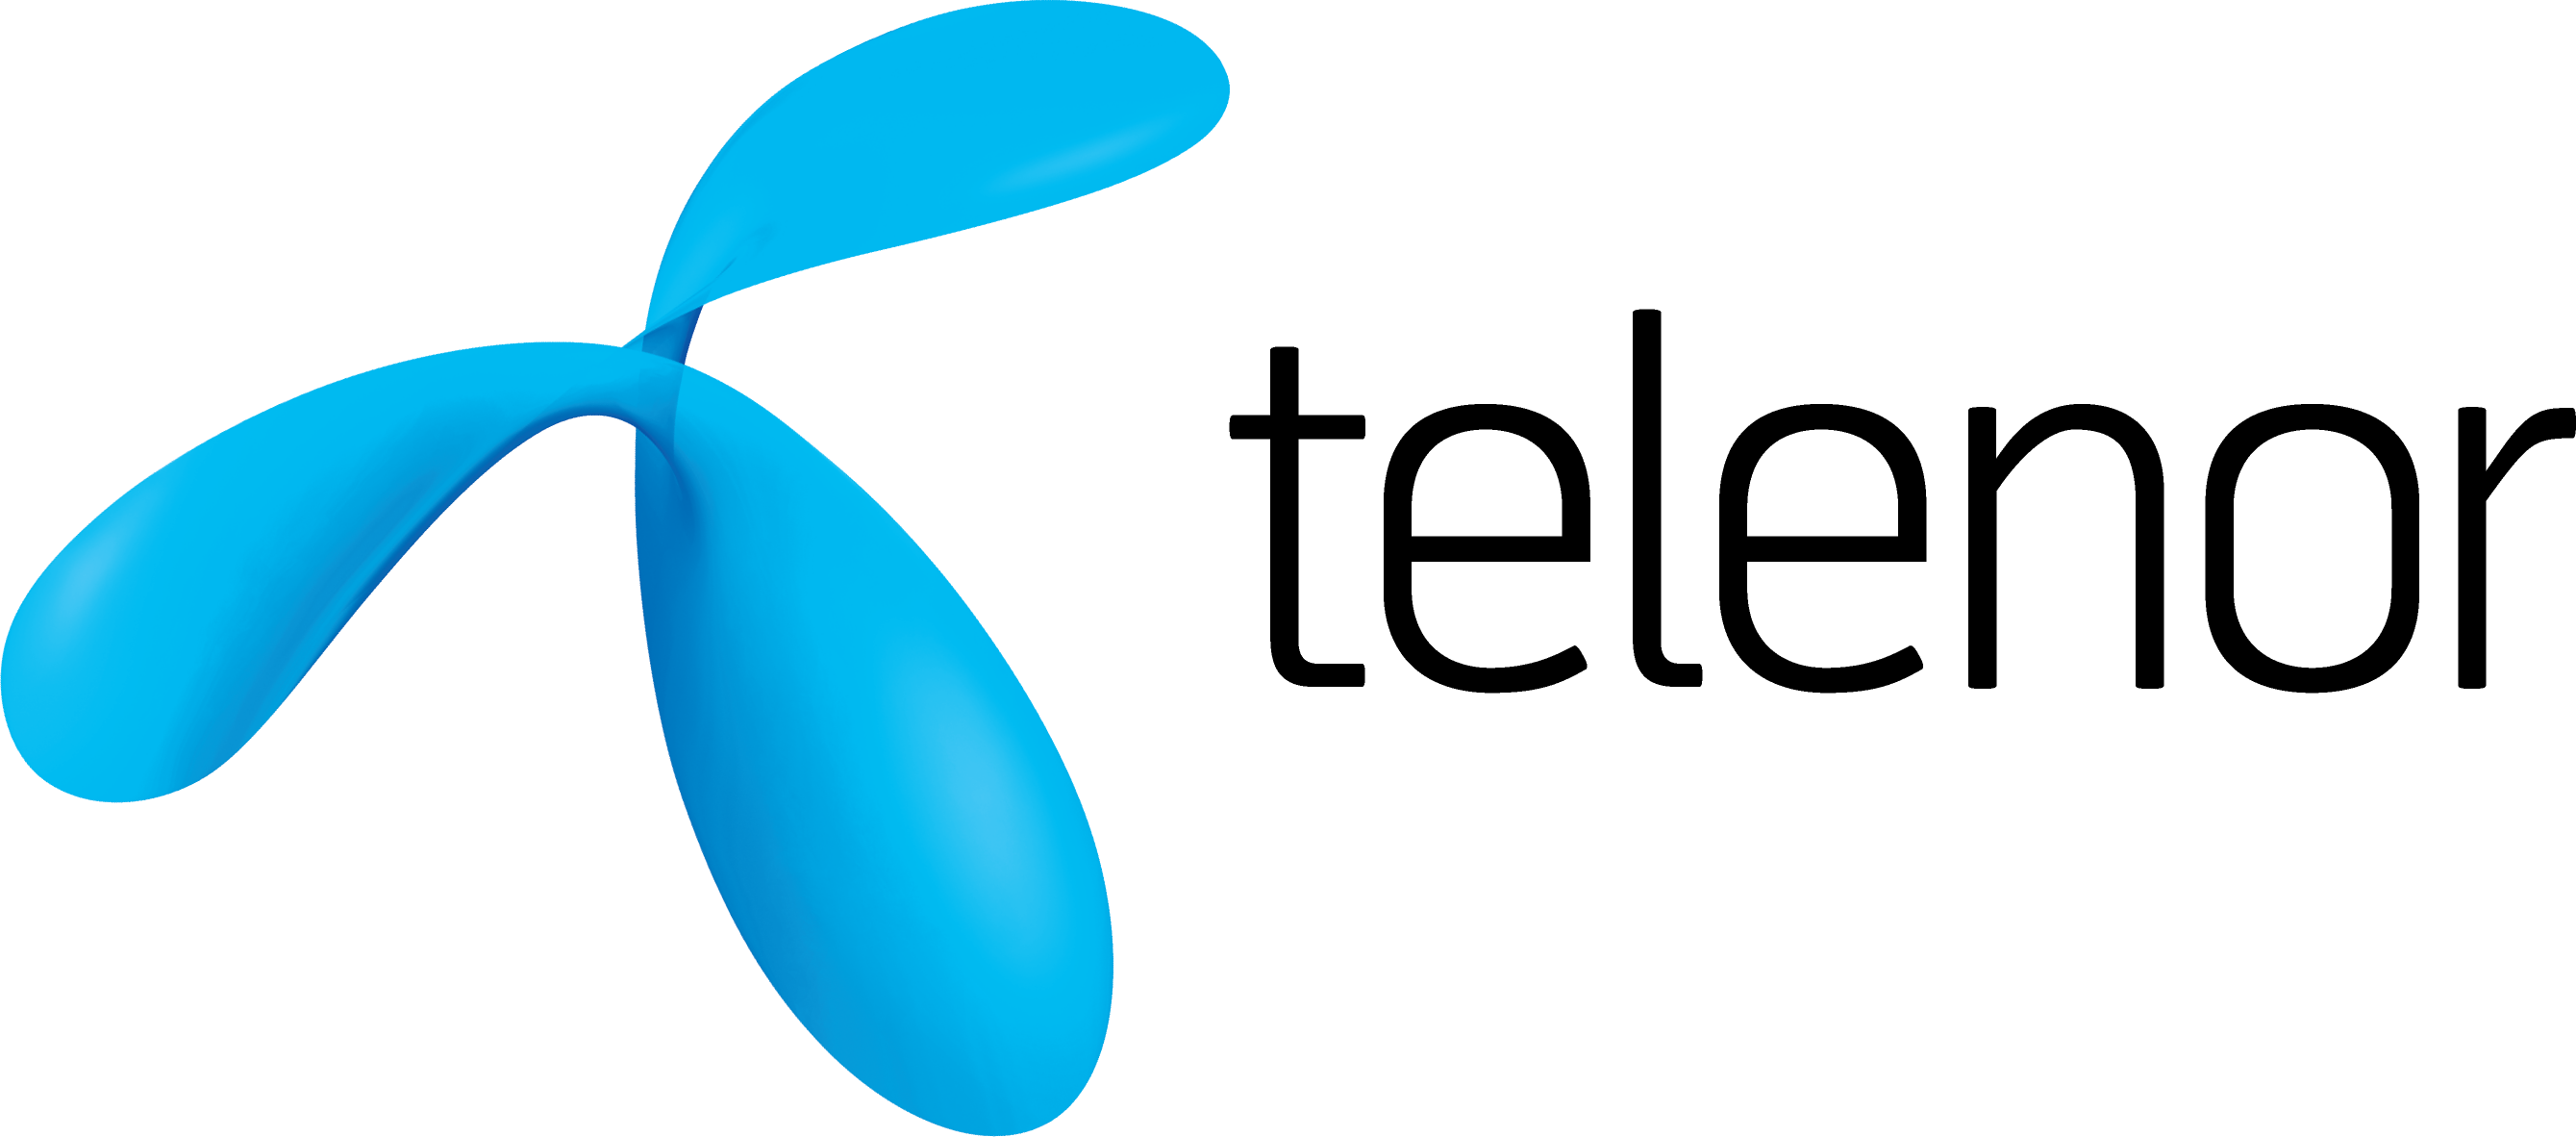 Telenor_logo